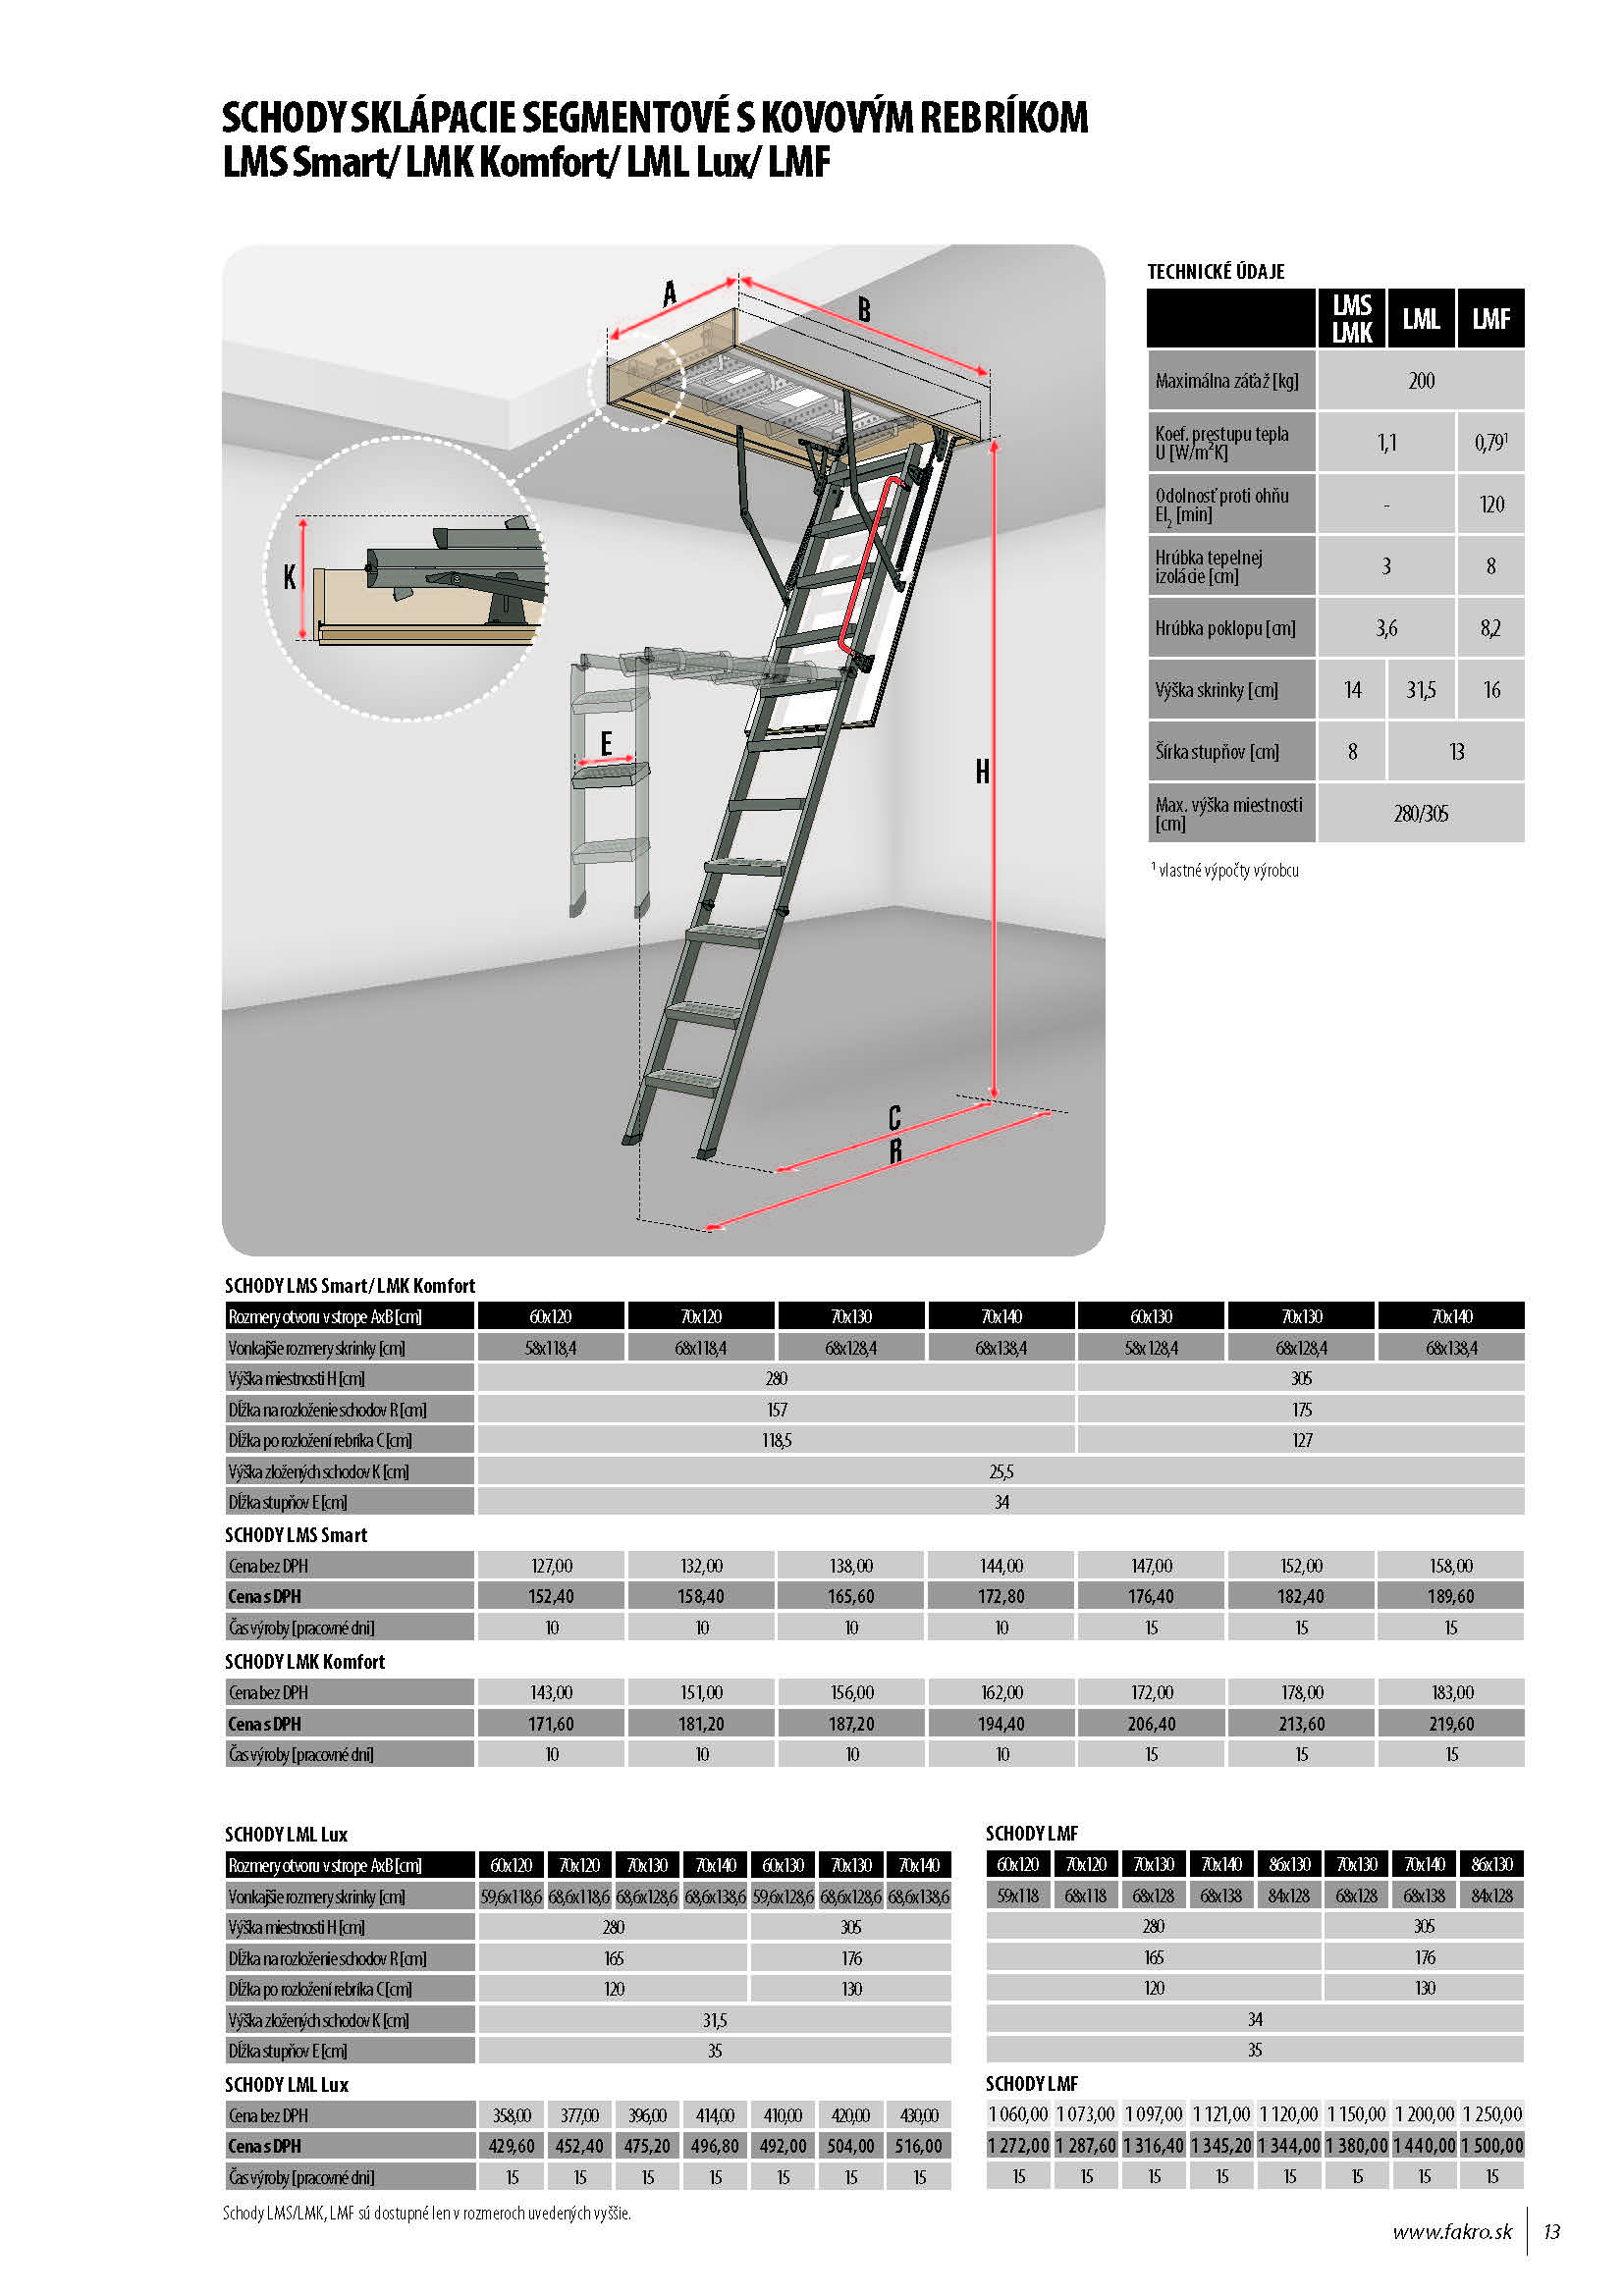 Schody Faakro sklápacie segmentové s kovovým rebríkom LMS Smart